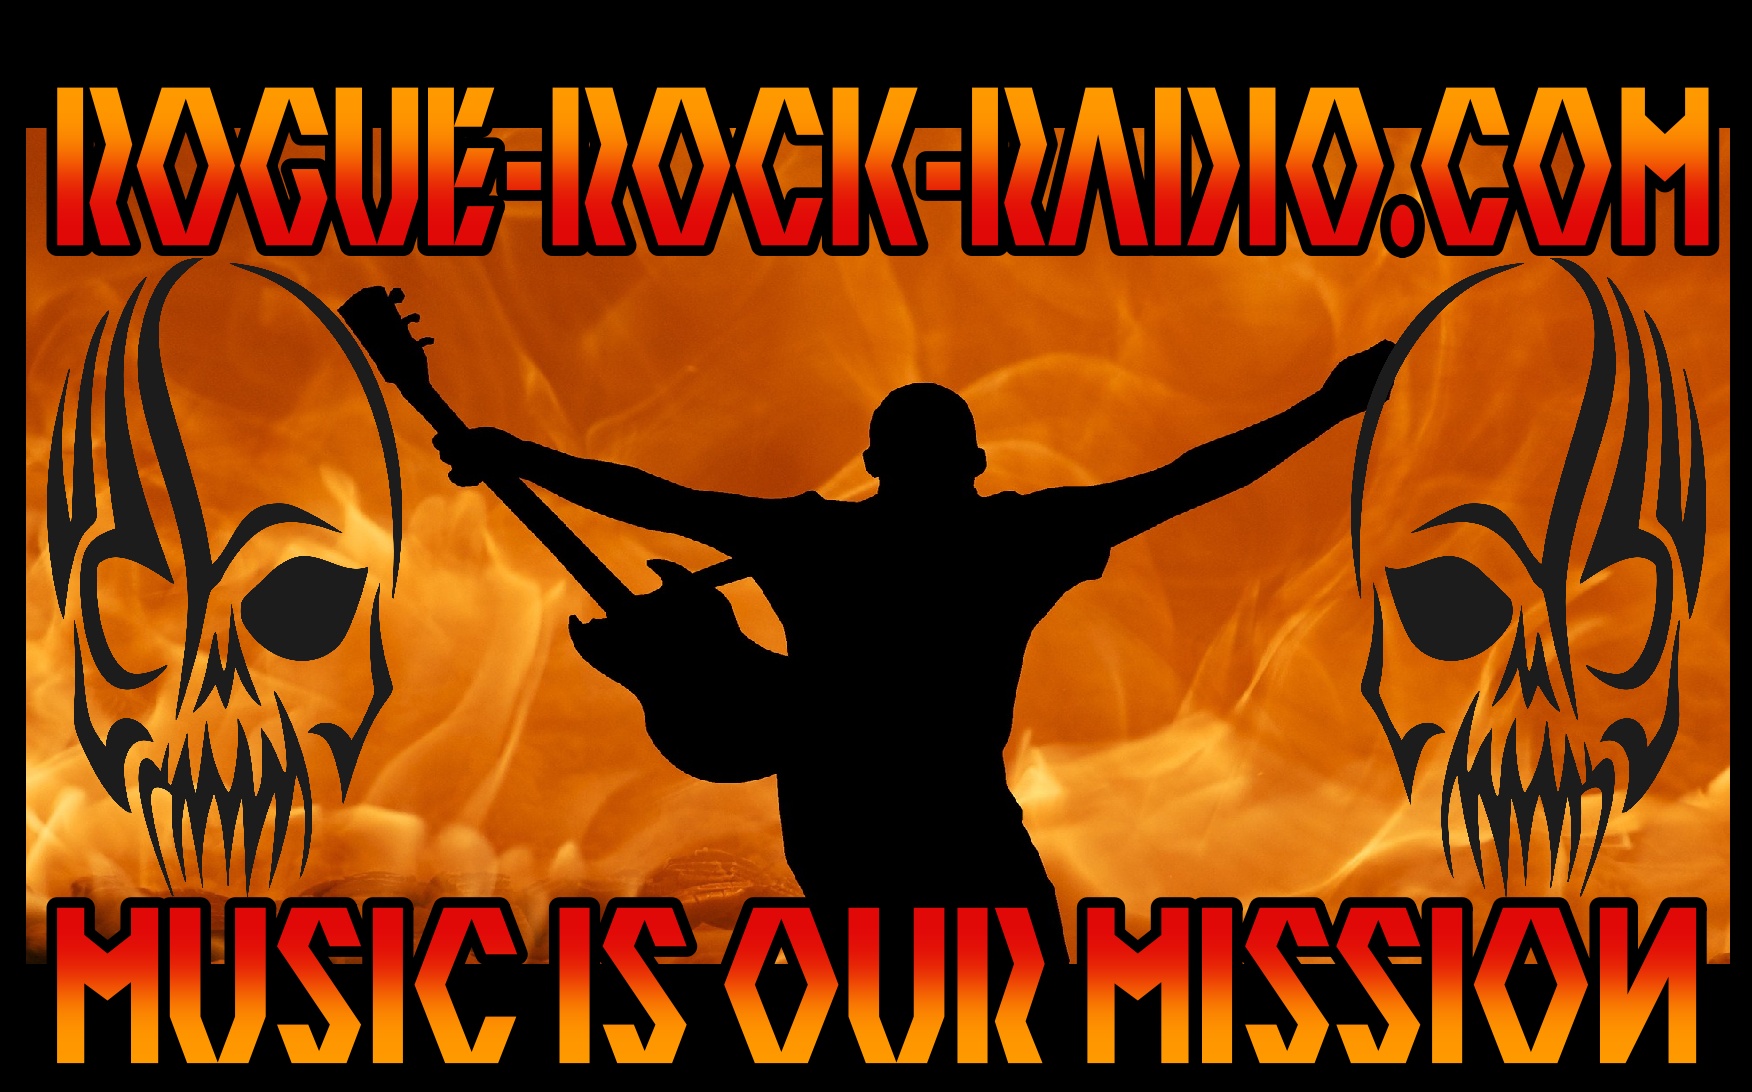 Rogue Rock Radio Logo